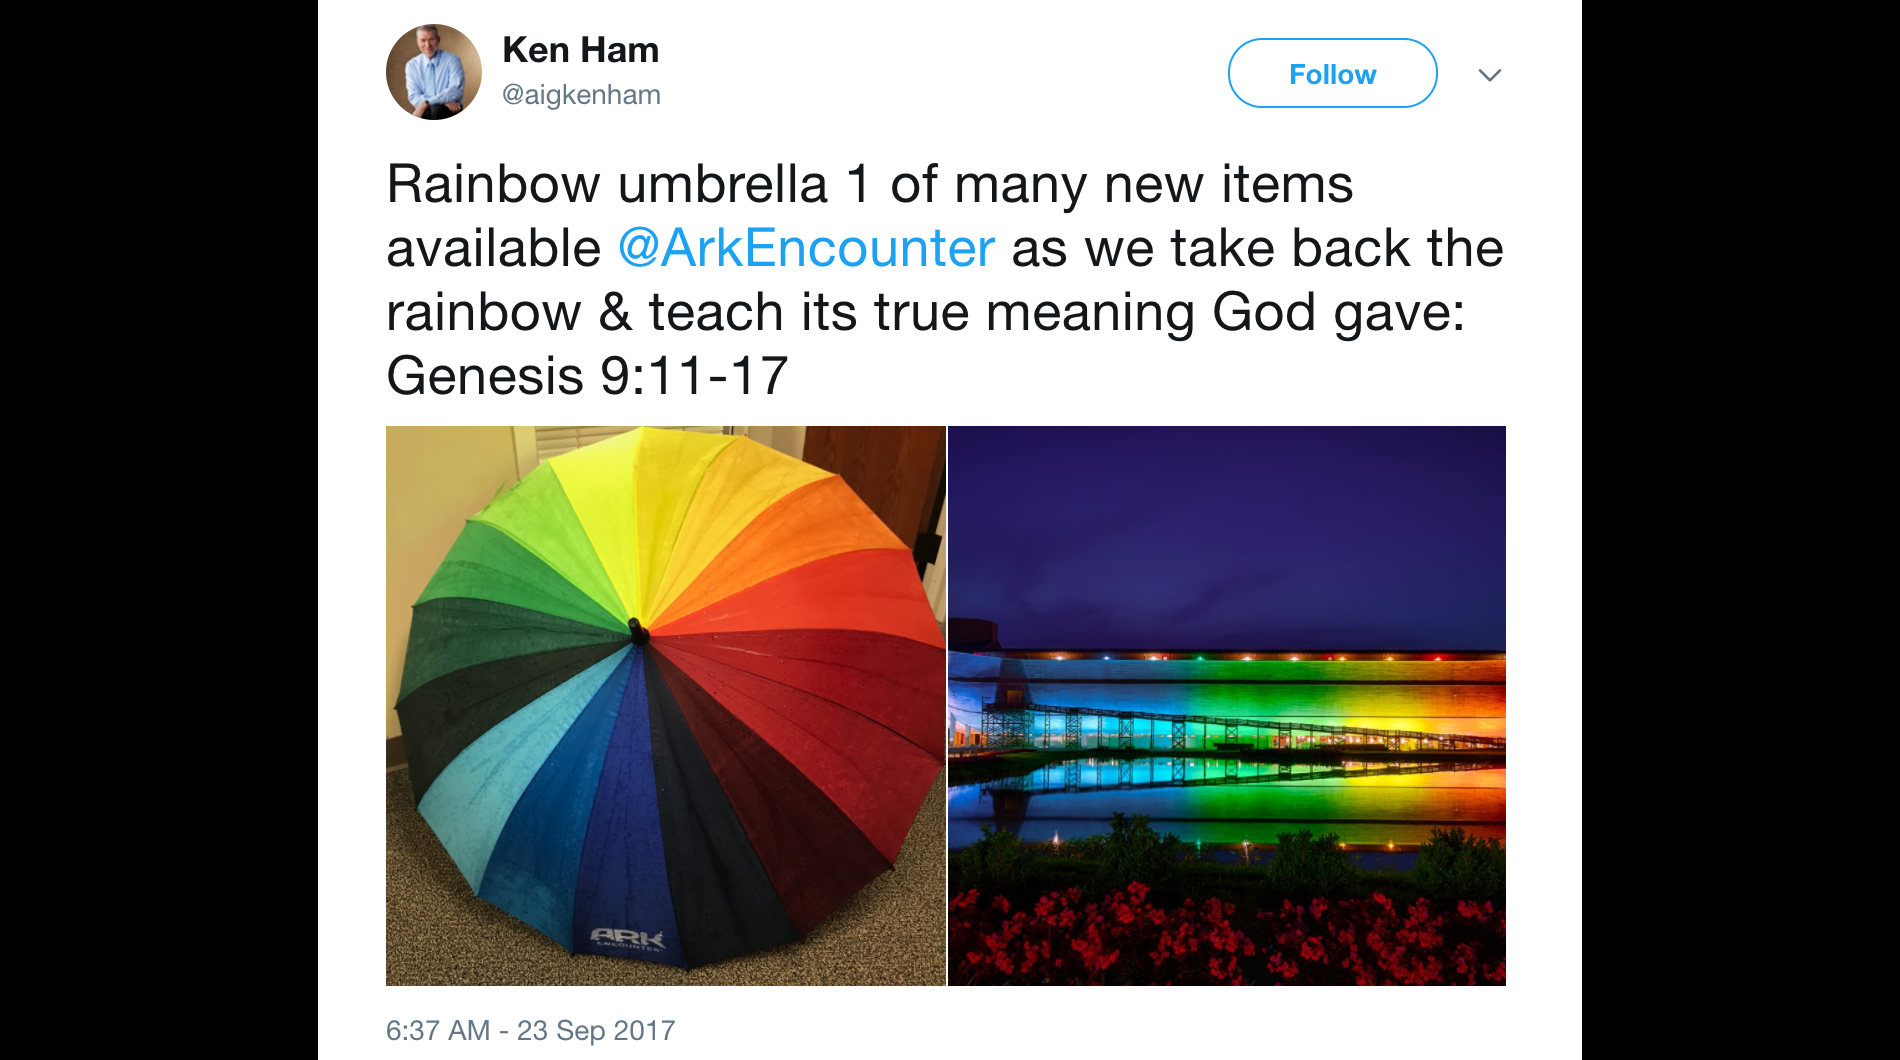 RainbowUmbrellaArk